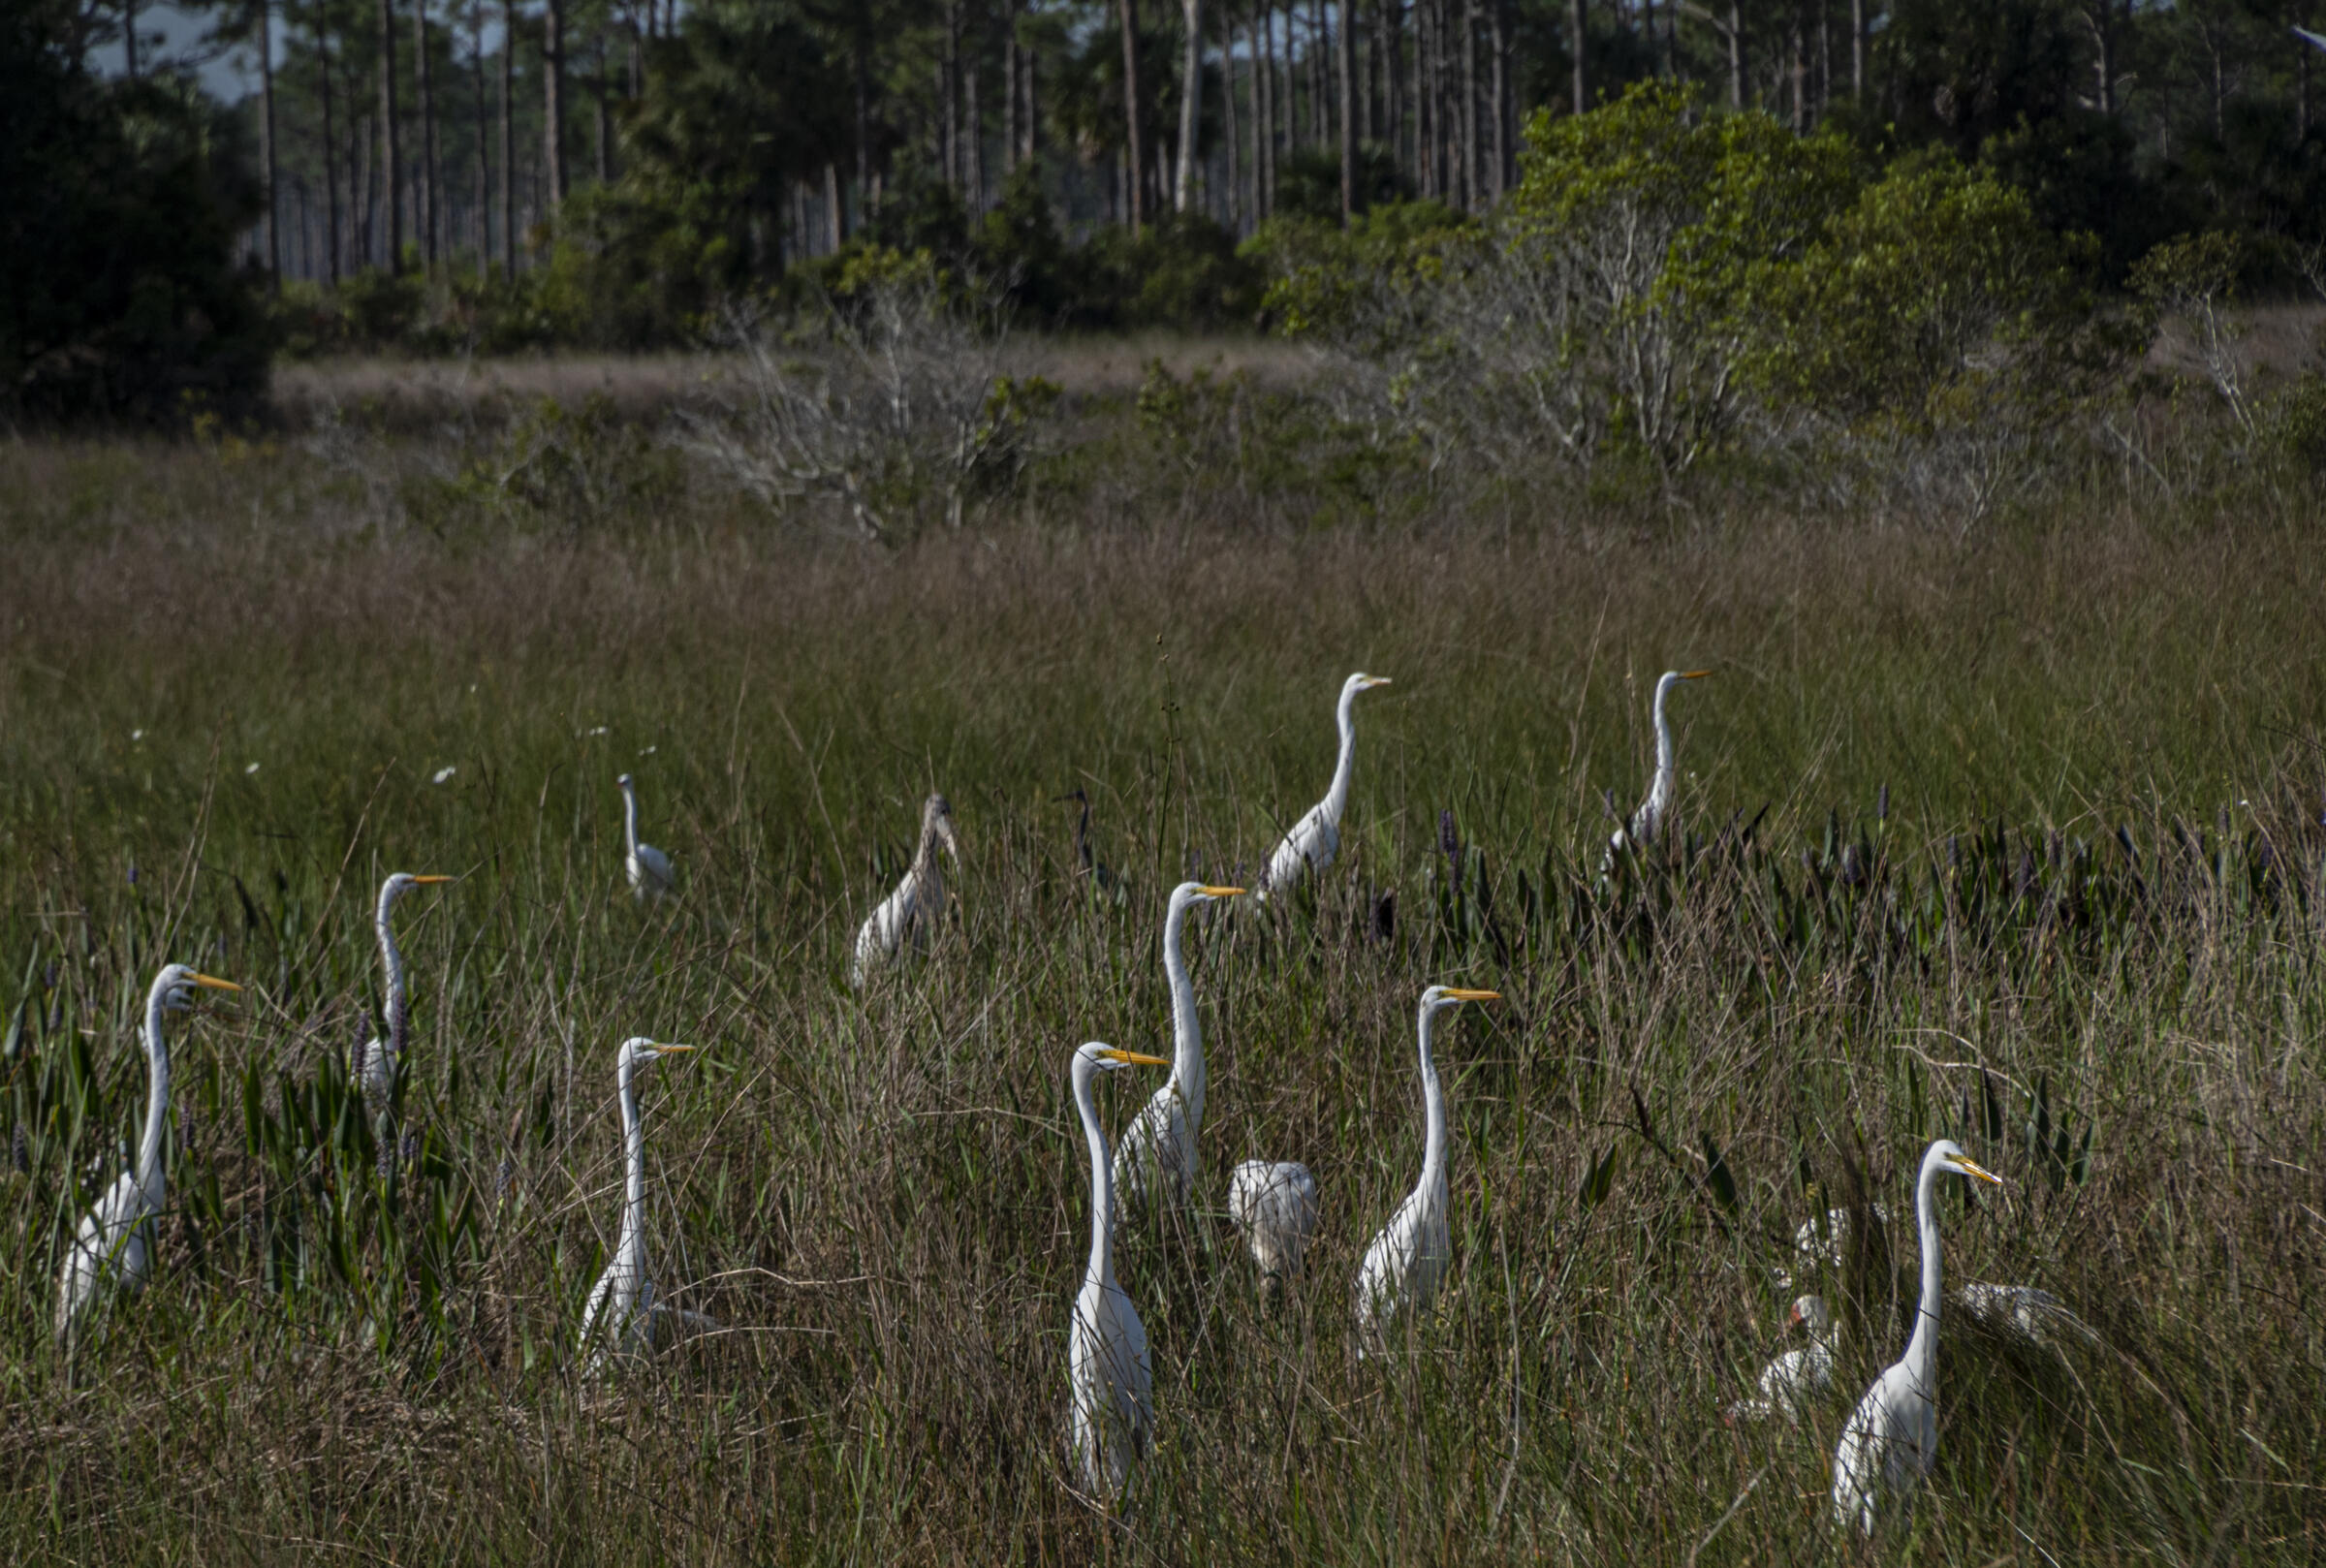 white birds in a grassy area